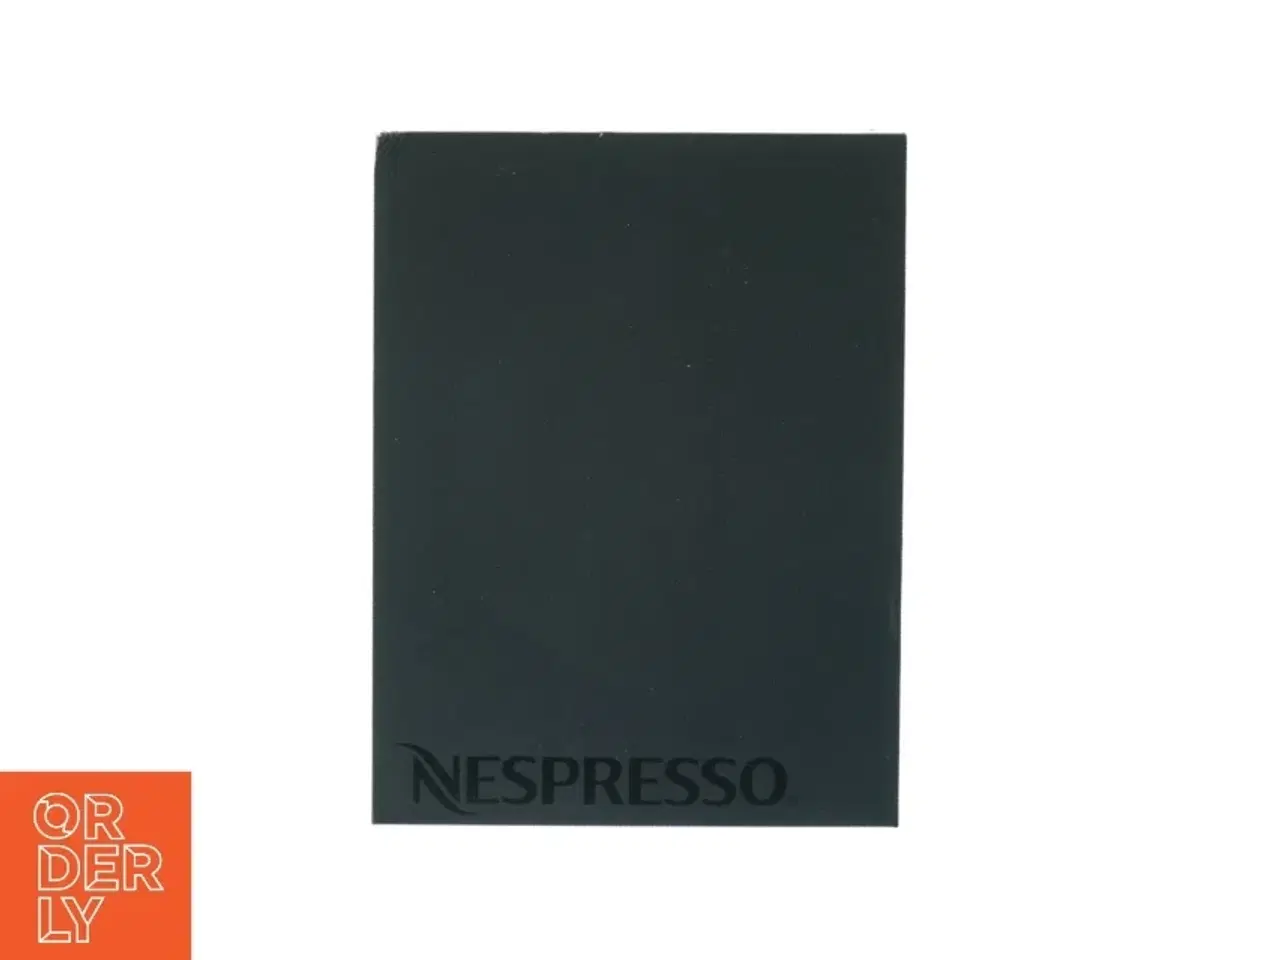 Billede 2 - Nespresso kopper og tallerkner fra Nespresso (str. 23 x 17 cm)